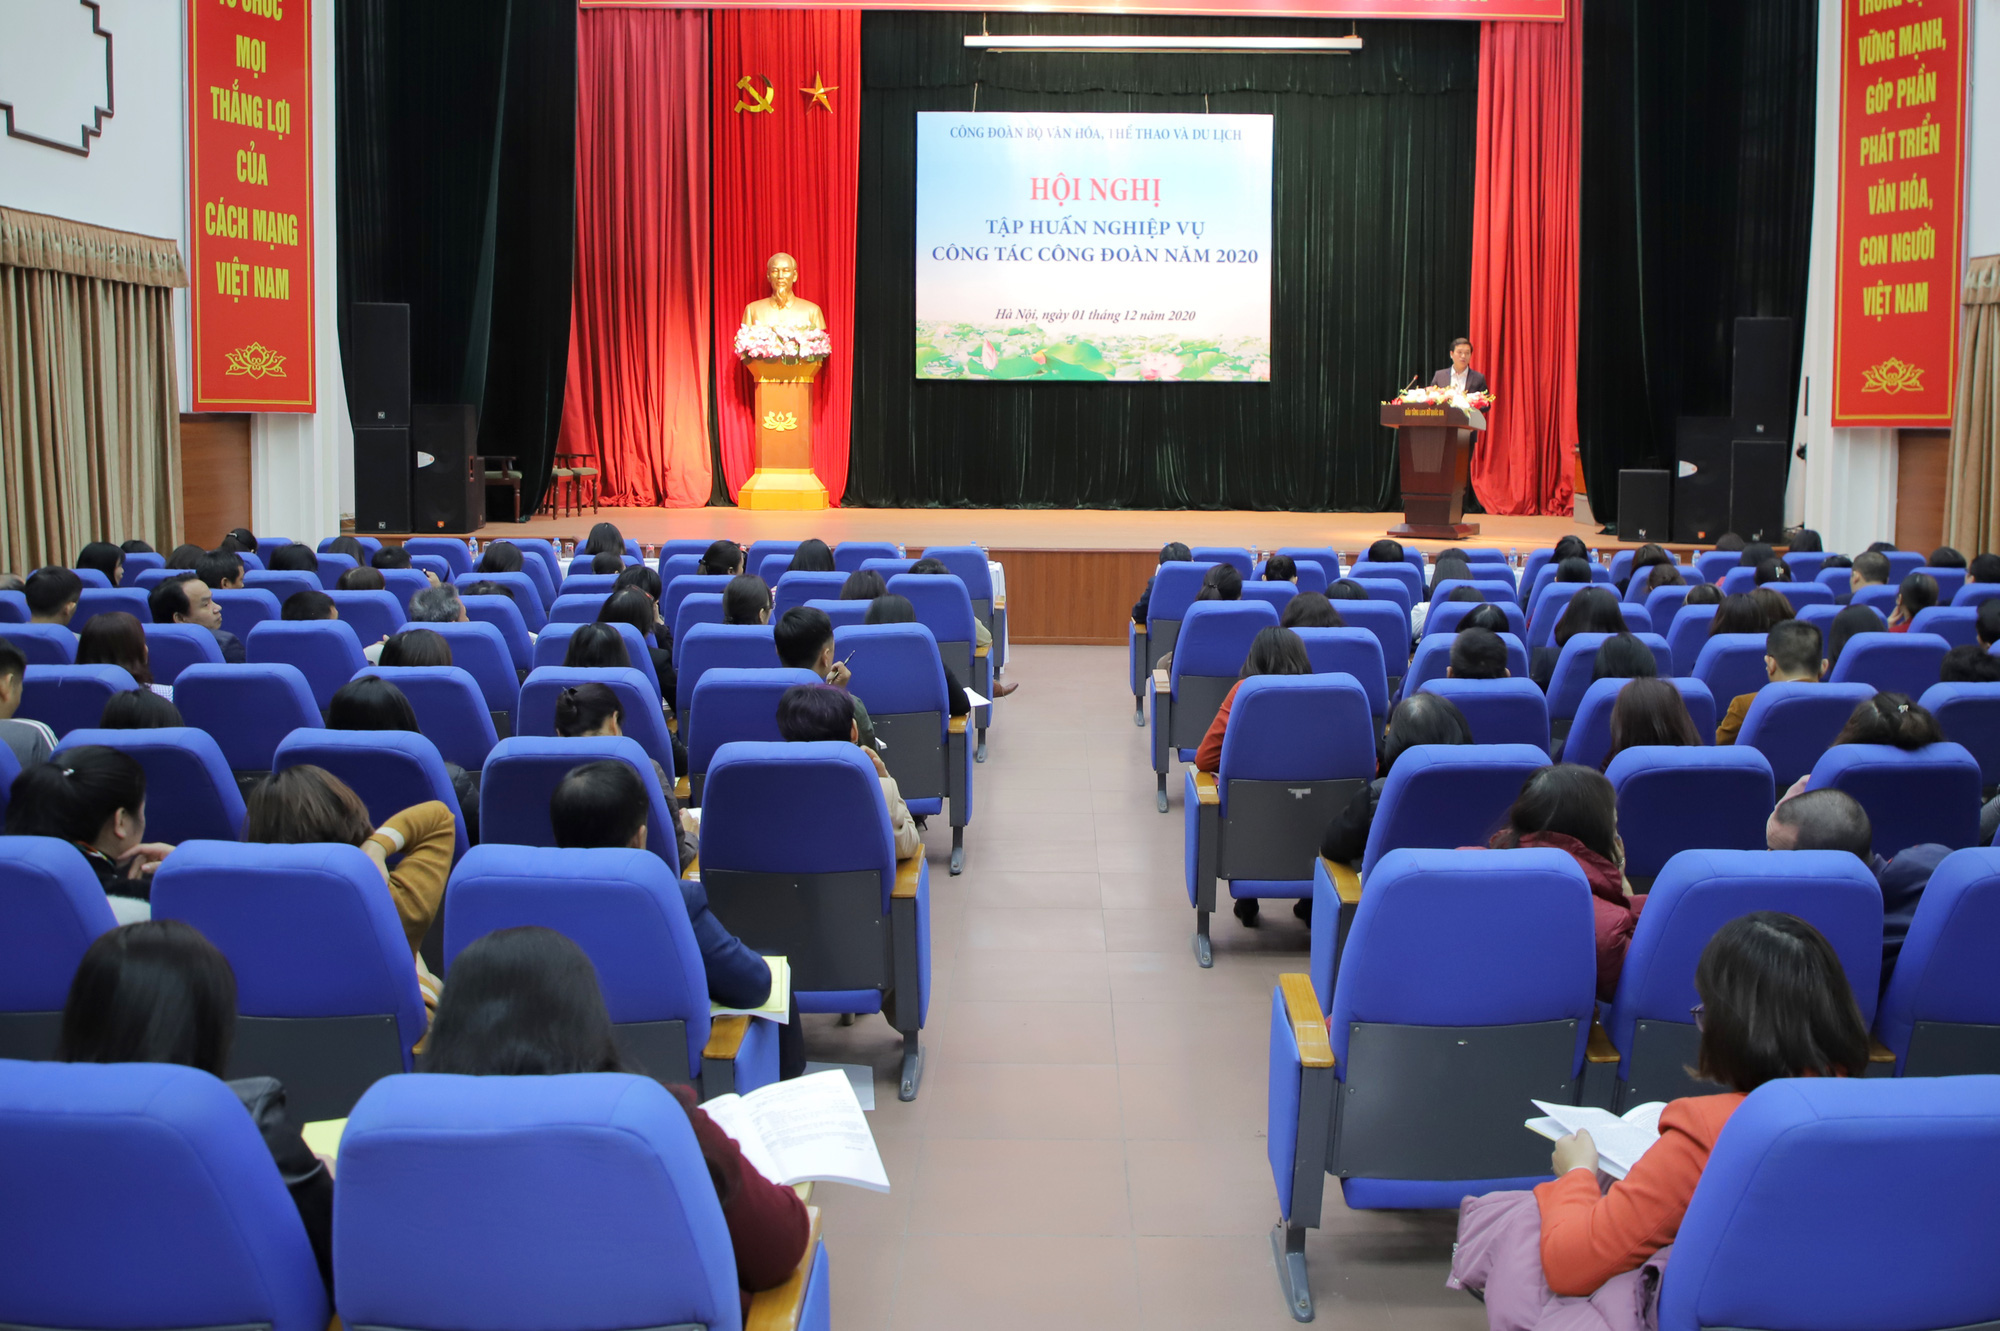 Công đoàn Bộ VHTTDL tổ chức Hội nghị Tập huấn nghiệp vụ công tác công đoàn - Ảnh 1.